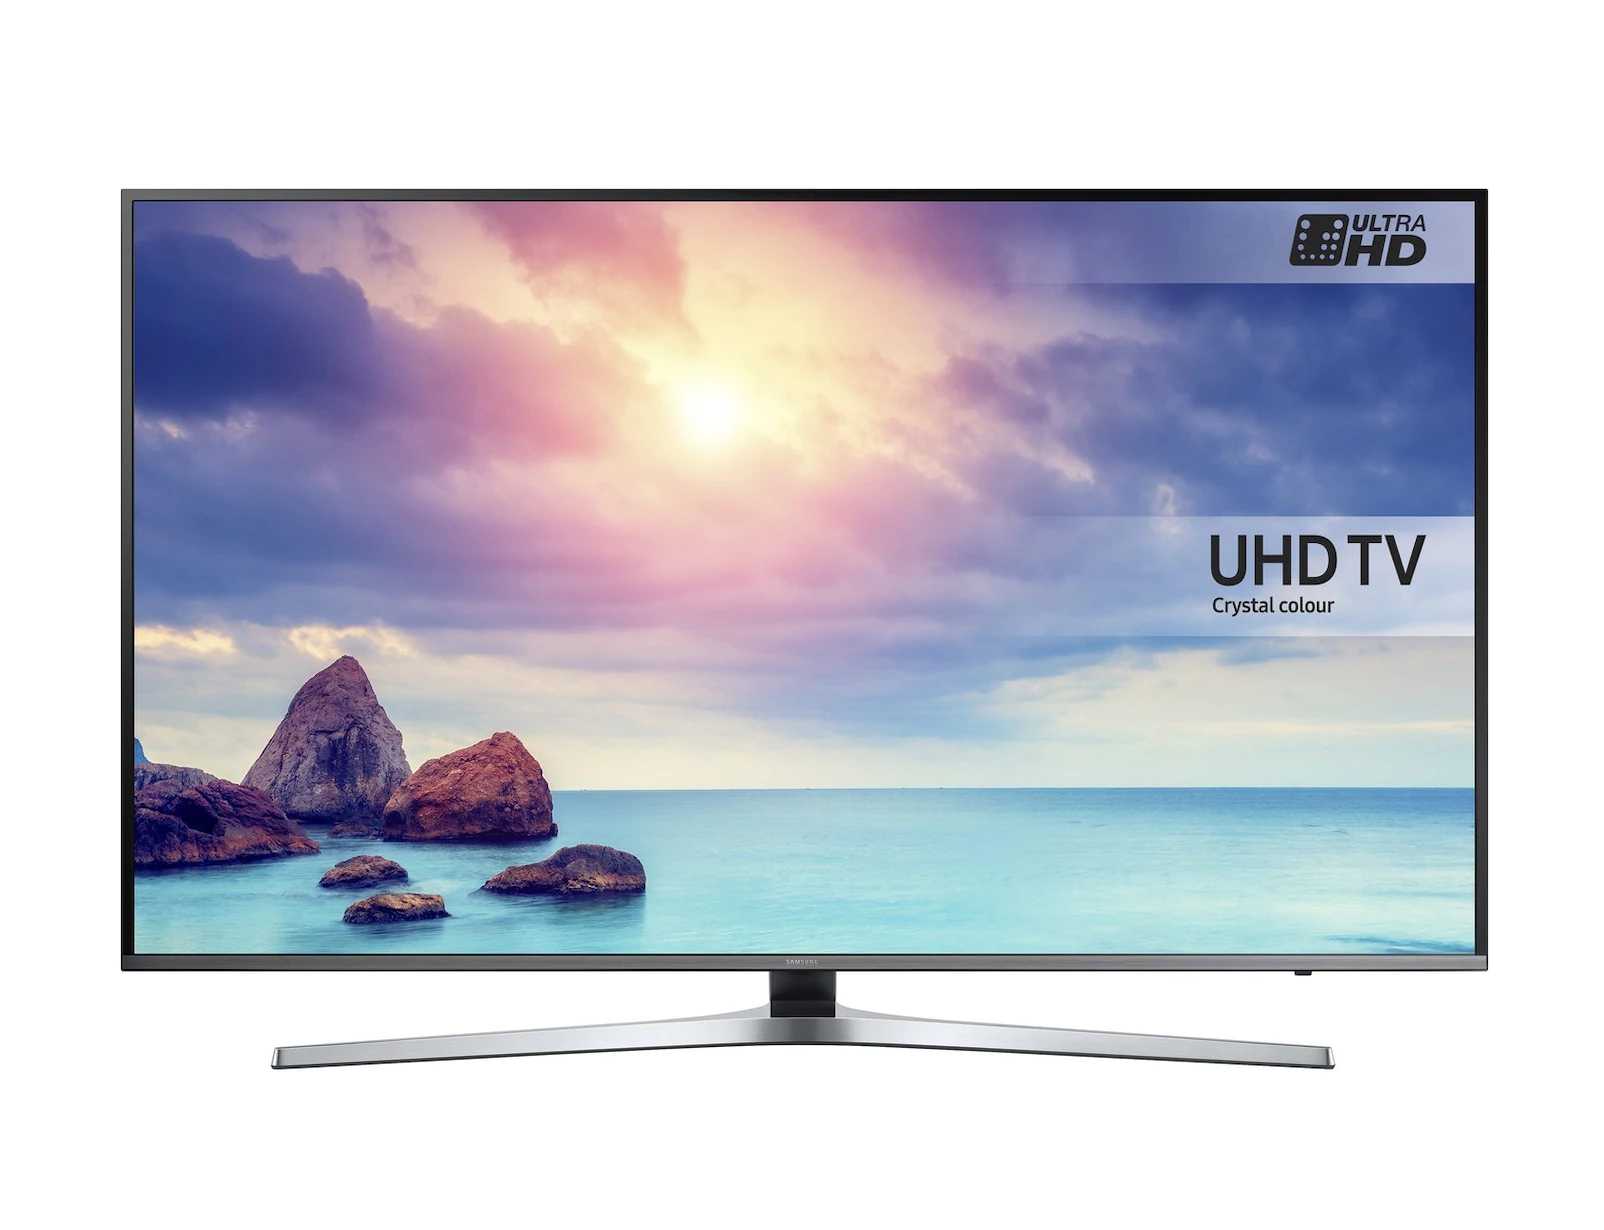 Samsung ue49ku6510uxru (белый) - купить , скидки, цена, отзывы, обзор, характеристики - телевизоры